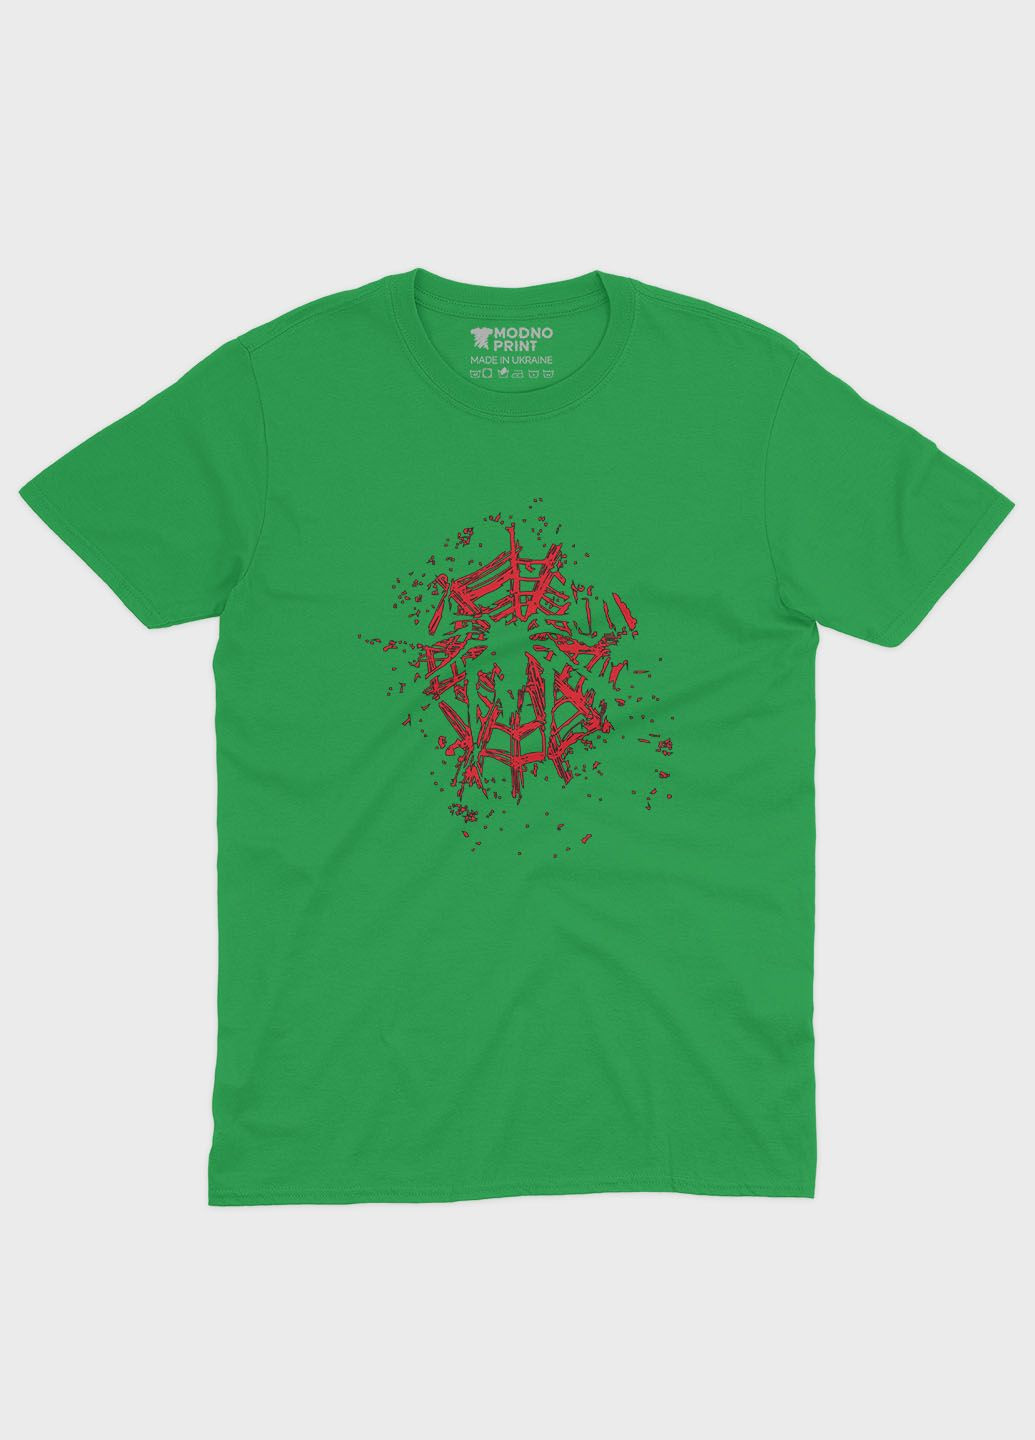 Зелена демісезонна футболка для дівчинки з принтом супергероя - людина-павук (ts001-1-keg-006-014-003-g) Modno